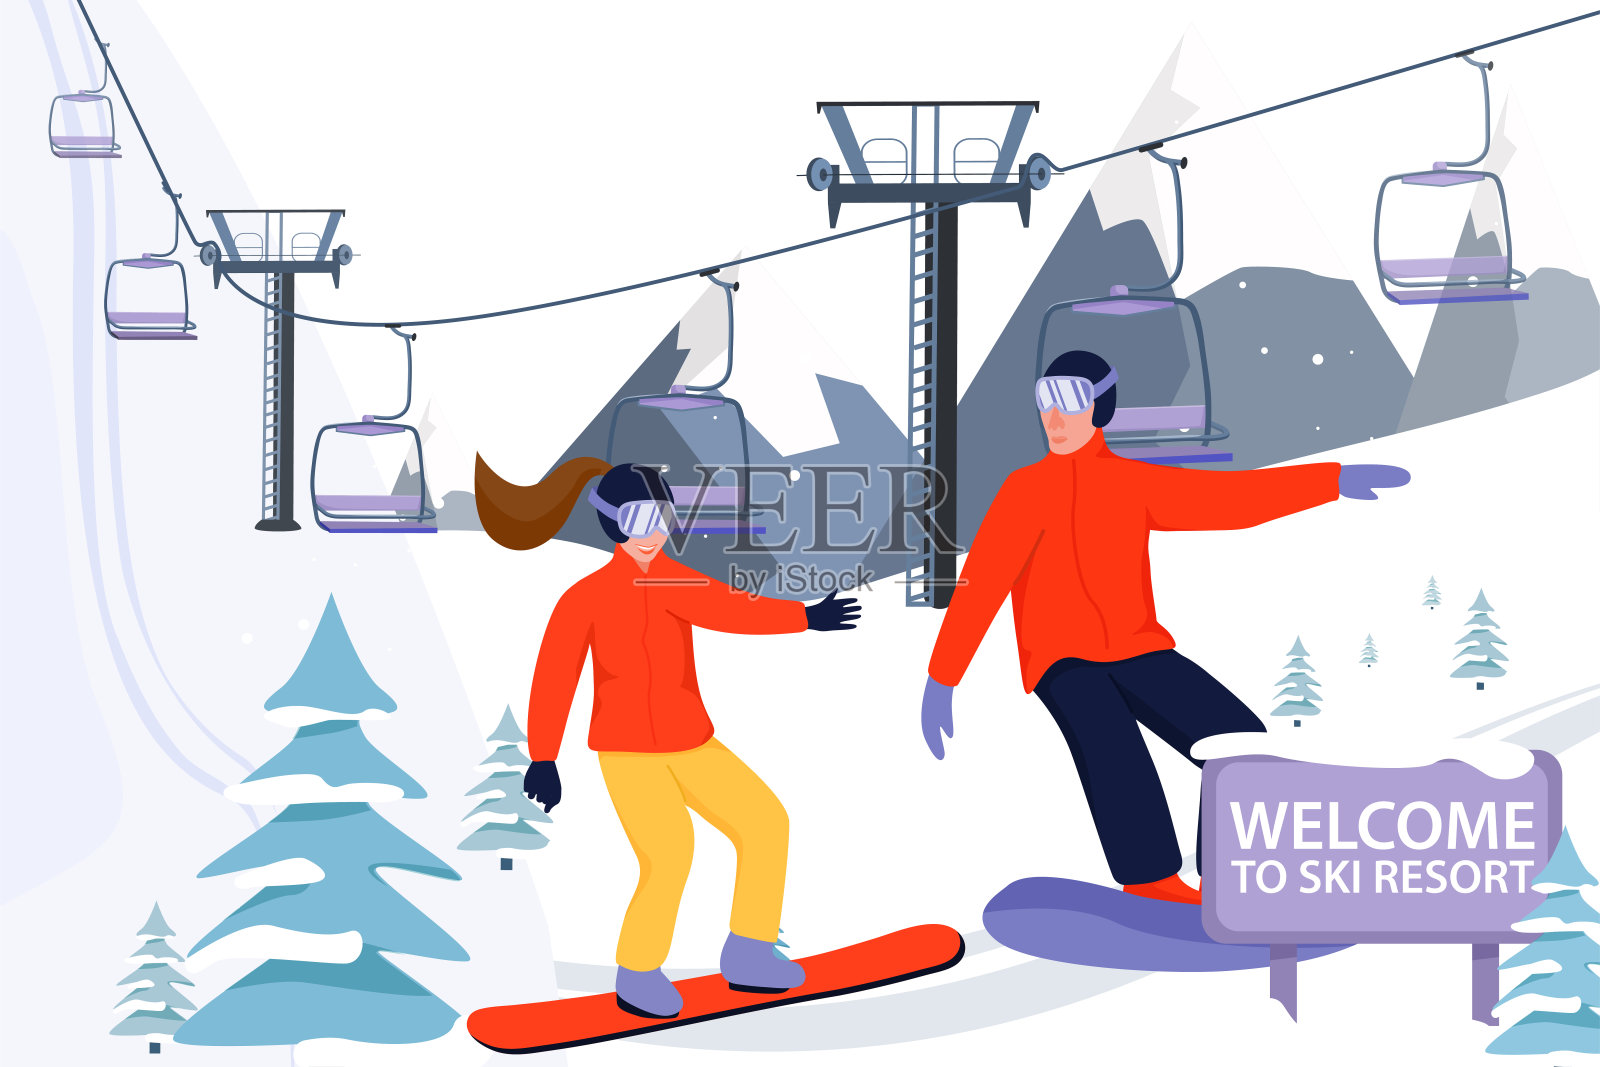 滑雪胜地旗帜插图与滑雪升降机。滑雪板运动员滑下斜坡。在山上滑雪。设计模板素材